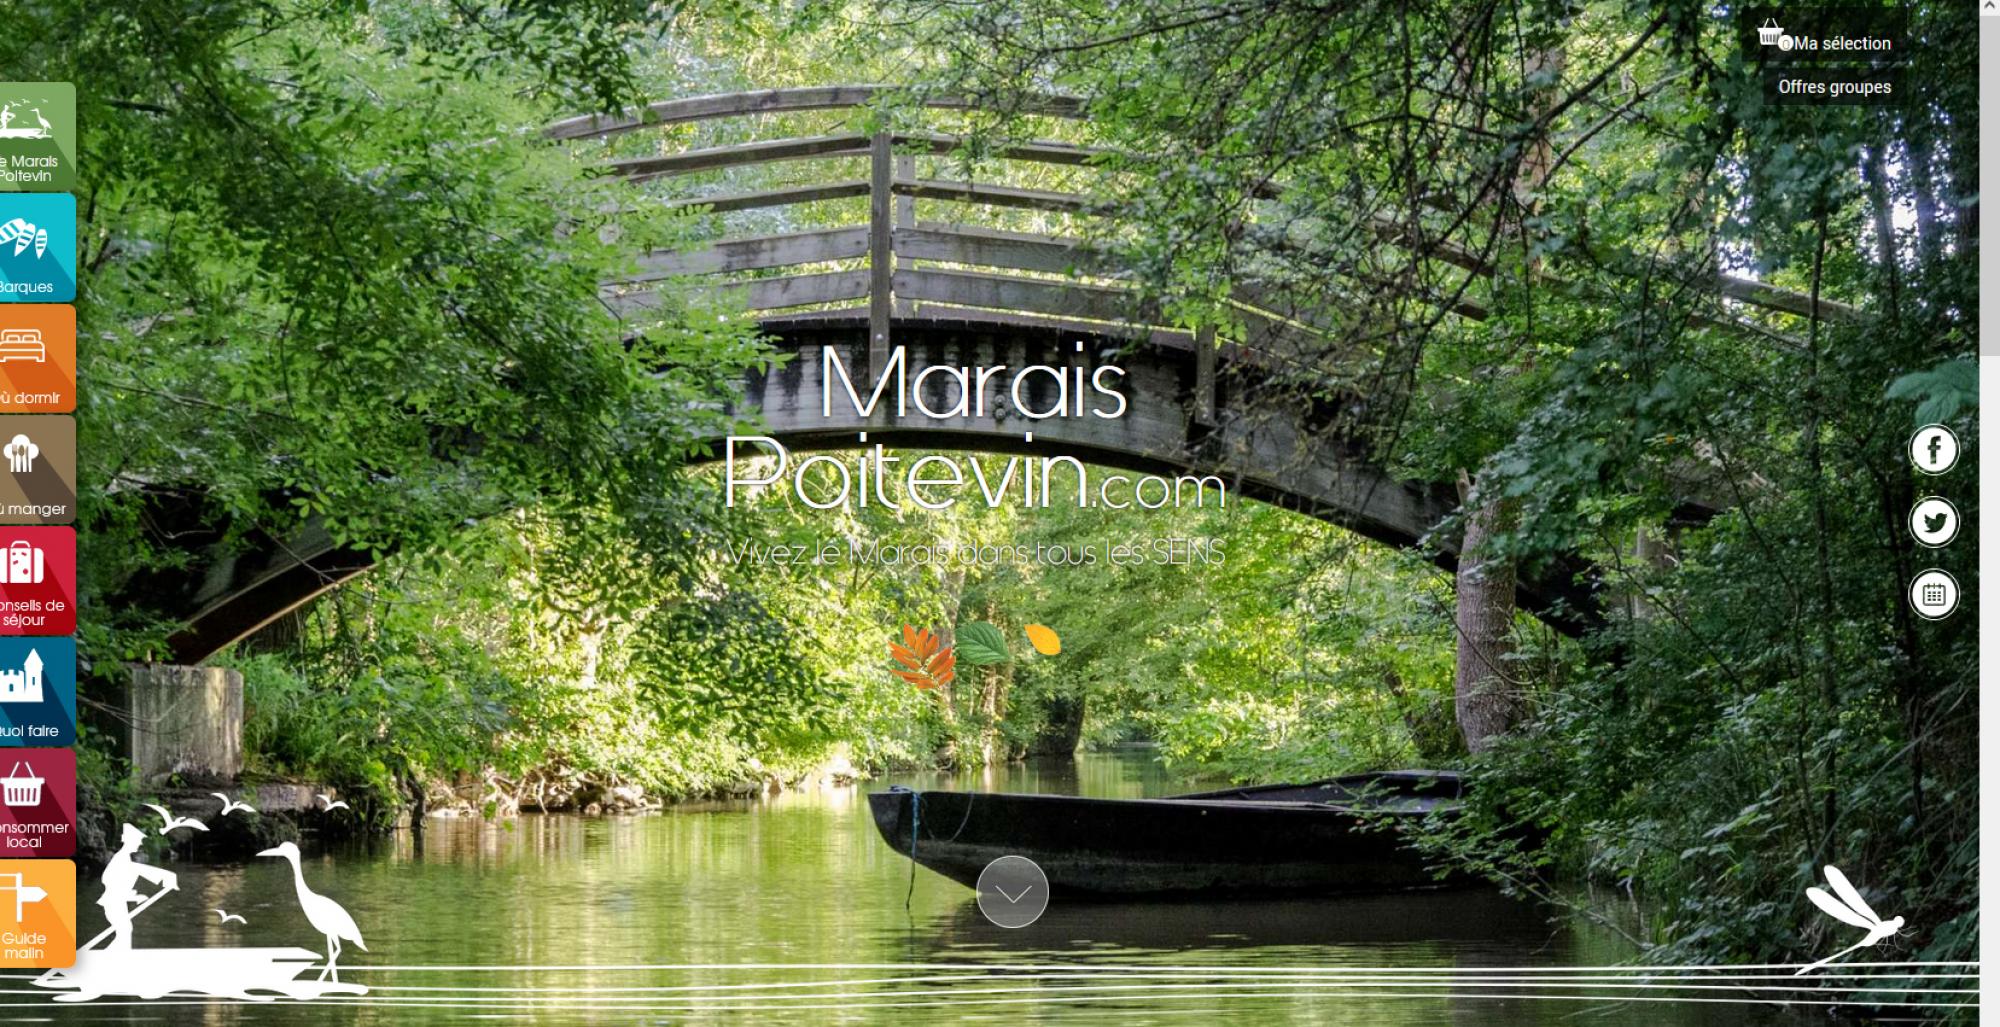 The Marais Poitevin, a magical landscape